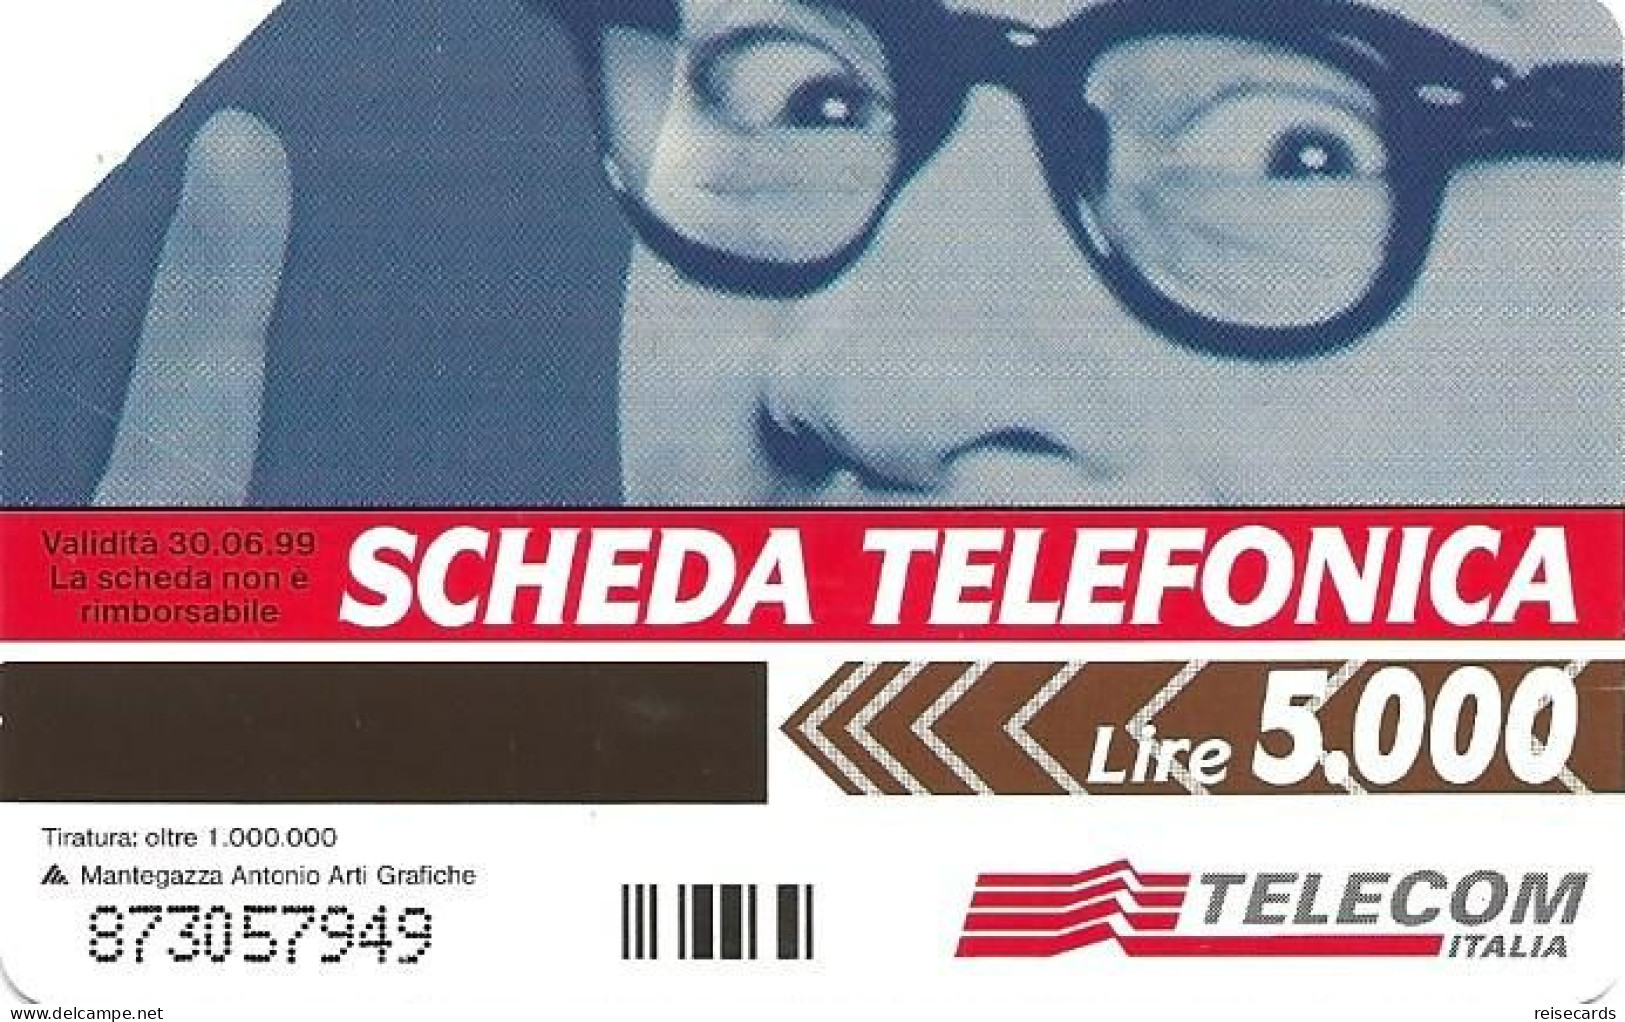 Italy: Telecom Italia - C'é La Scheda Telefonica, Avete Tanto Da Dire - Öff. Werbe-TK